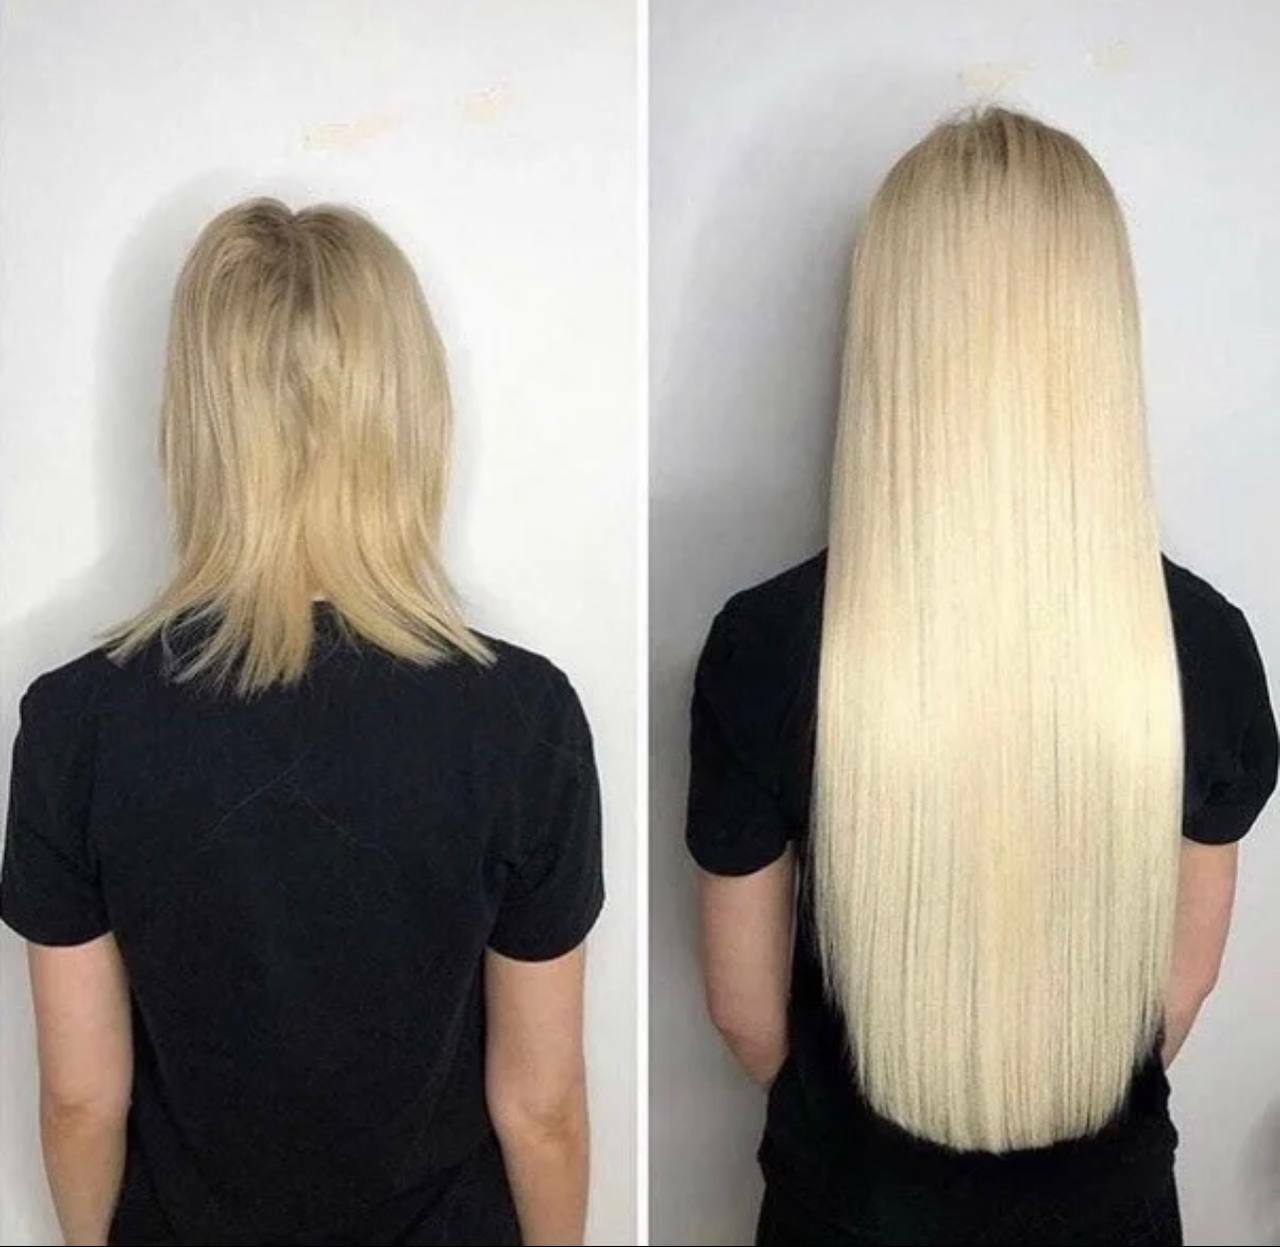 Нарощенные волосы 50 см фото до и после